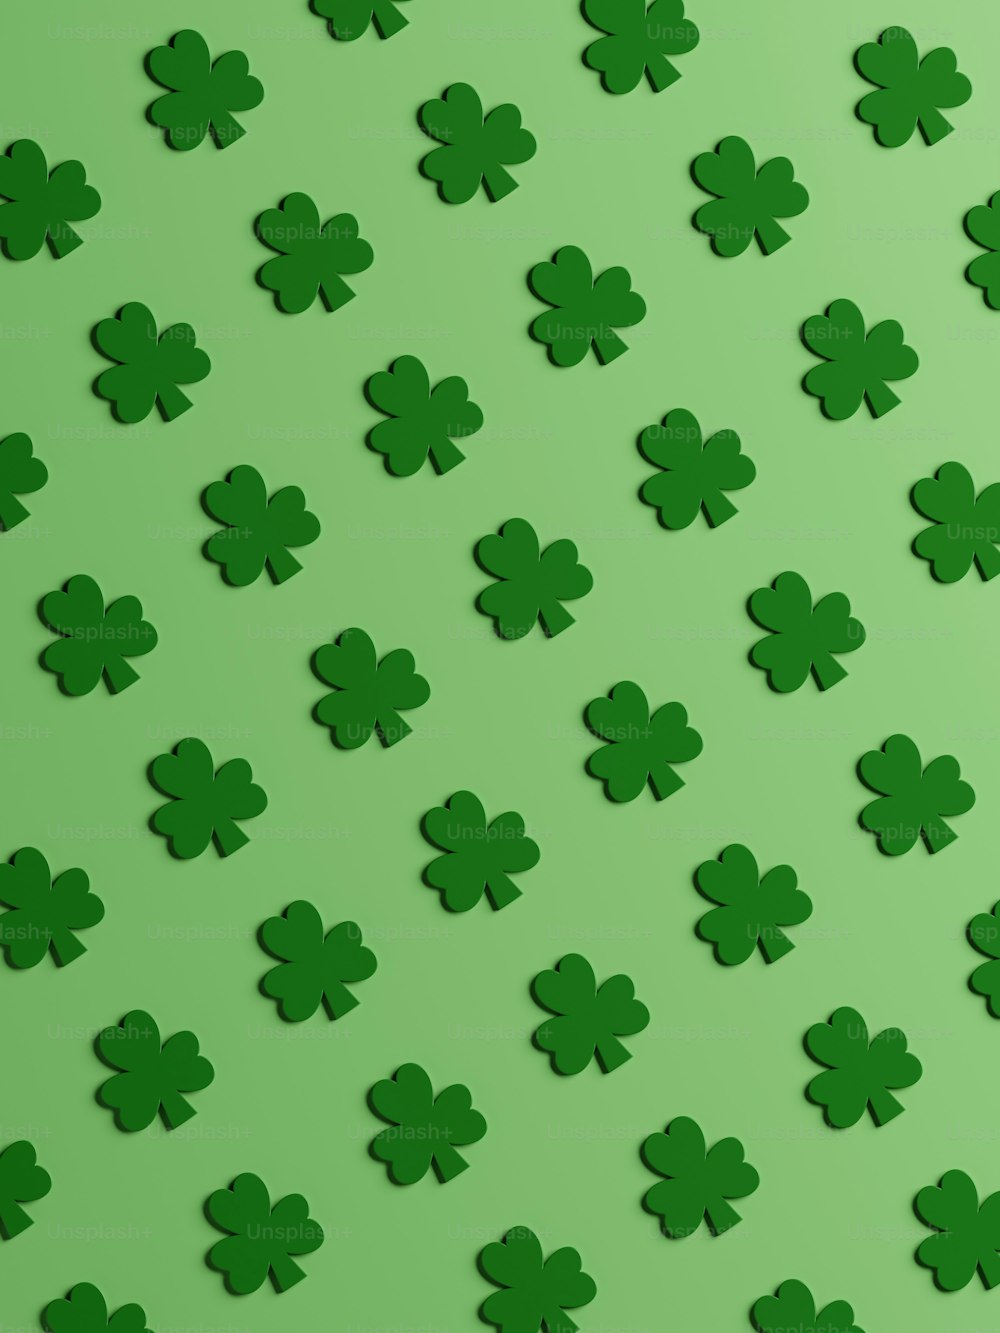 Ein Muster aus grünen Kleeblättern auf grünem Hintergrund